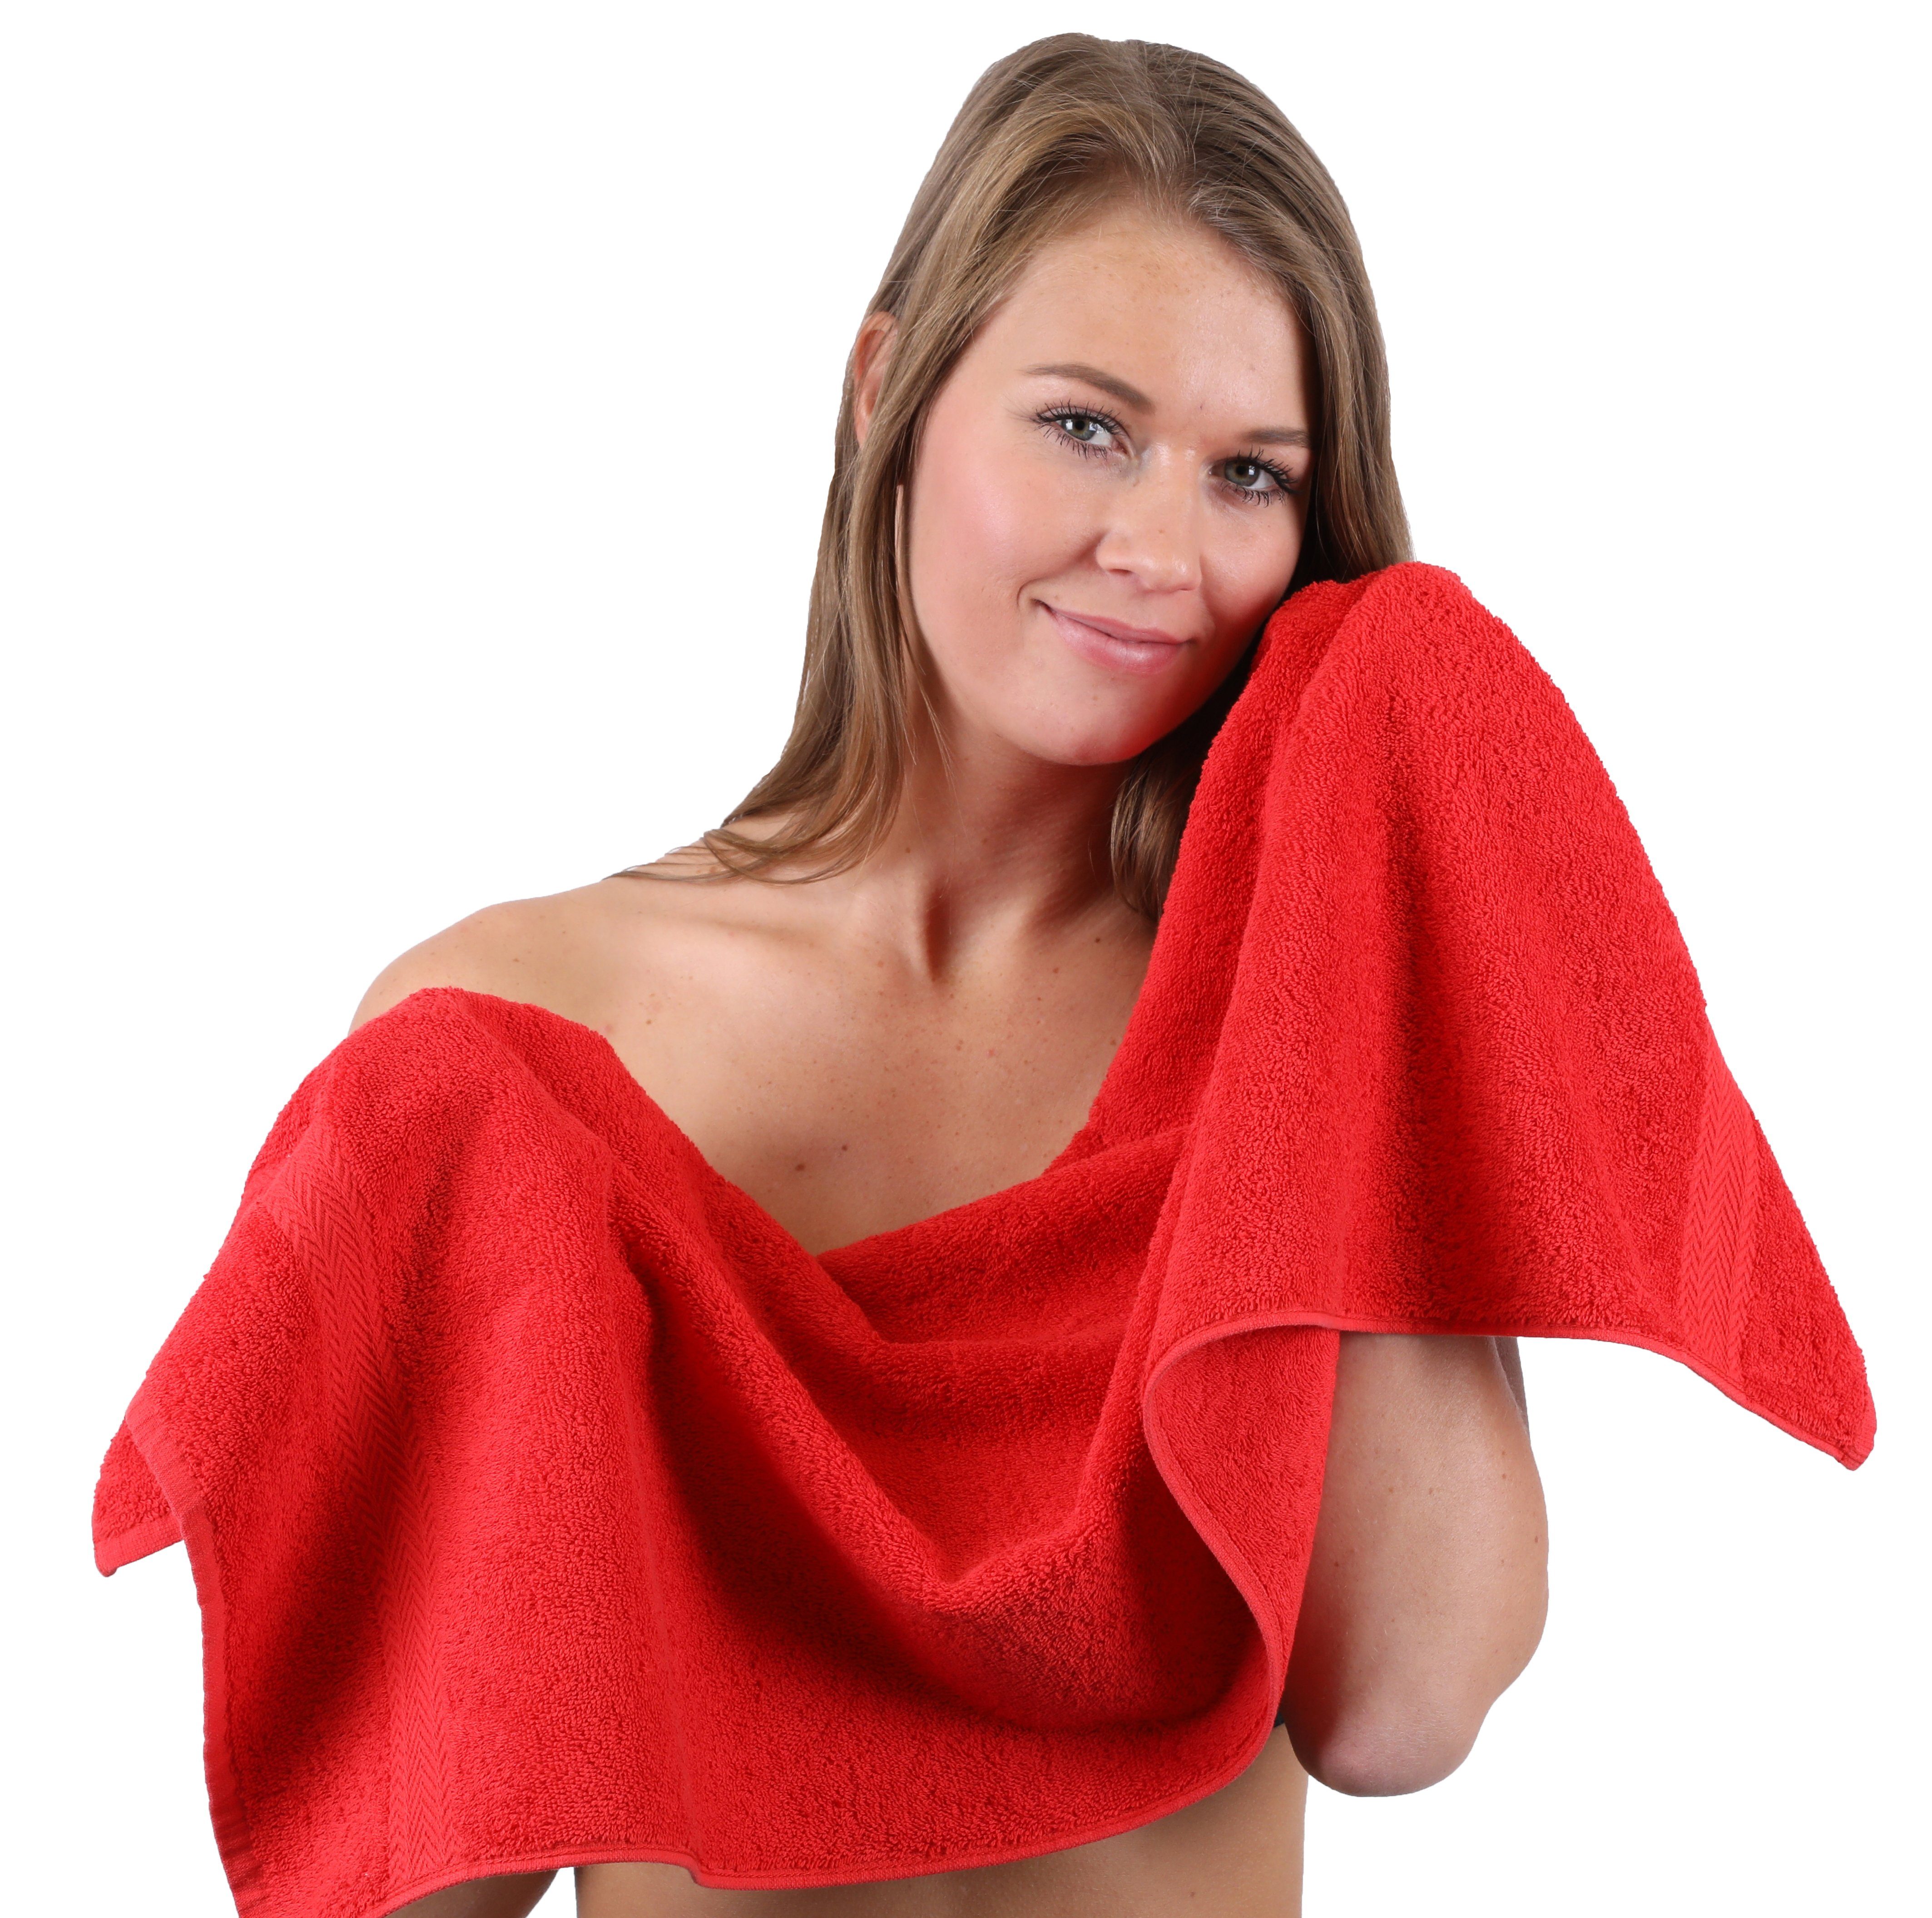 Betz Handtuch Set 10-TLG. Handtuch-Set Rot Dunkelbraun, Baumwolle, 100% Premium (10-tlg) Farbe &